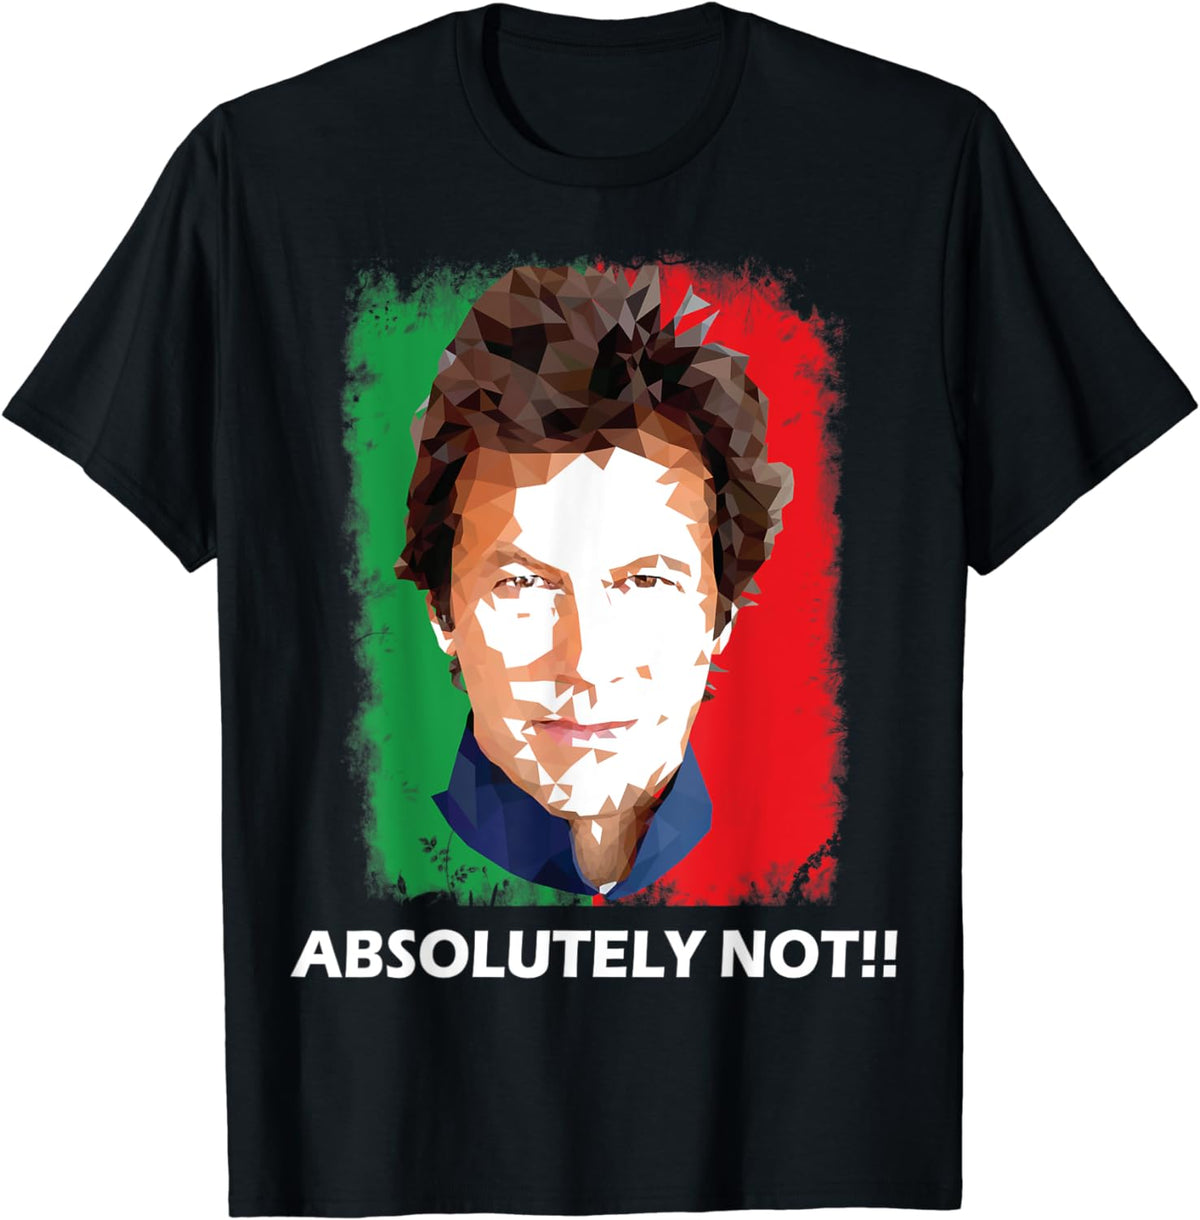 imran khan absolutely not art - t shirt